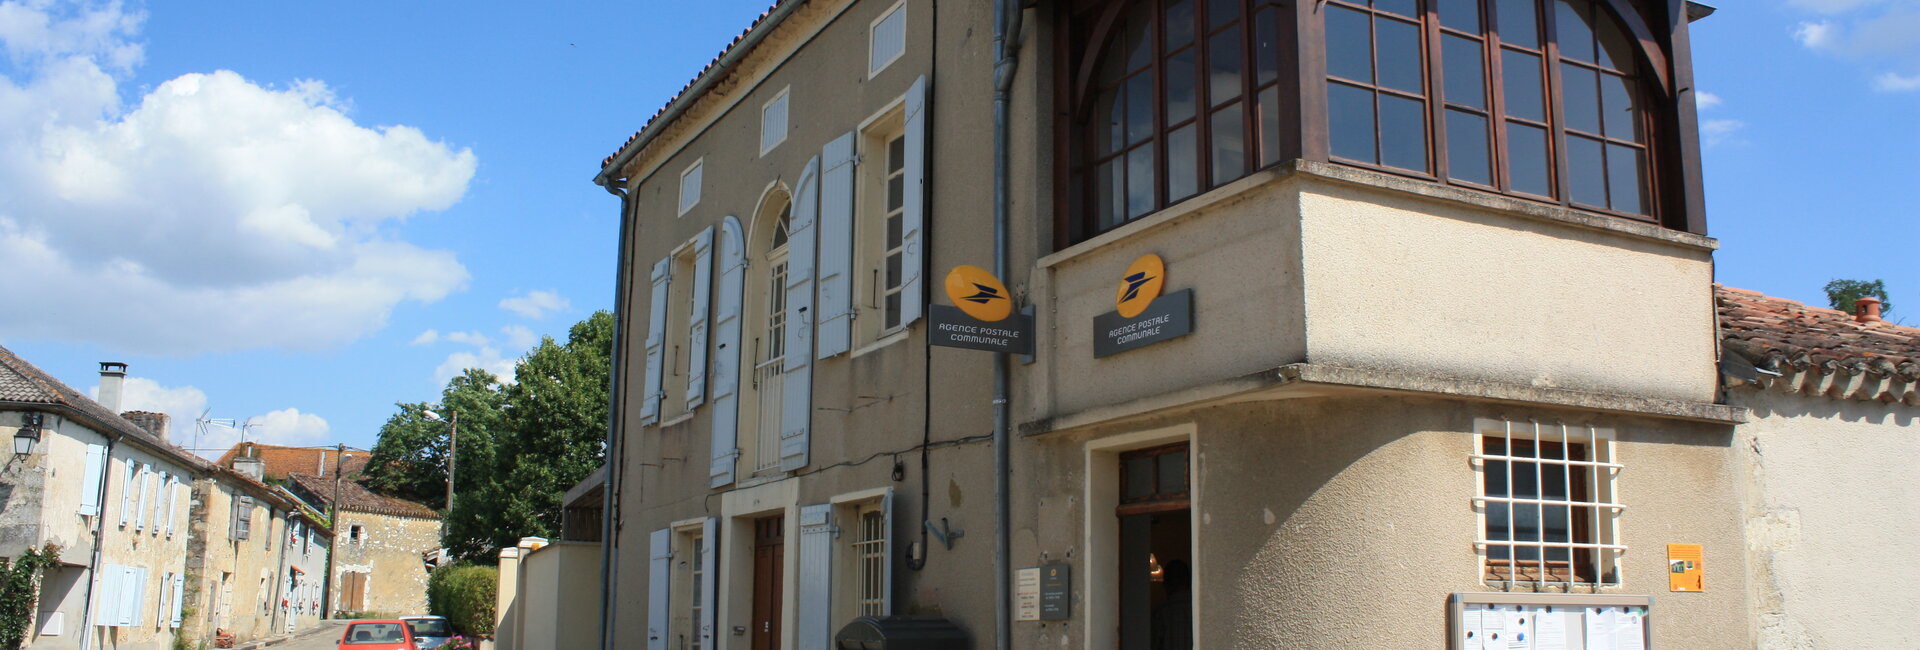 Agence postale commune de Mouchan